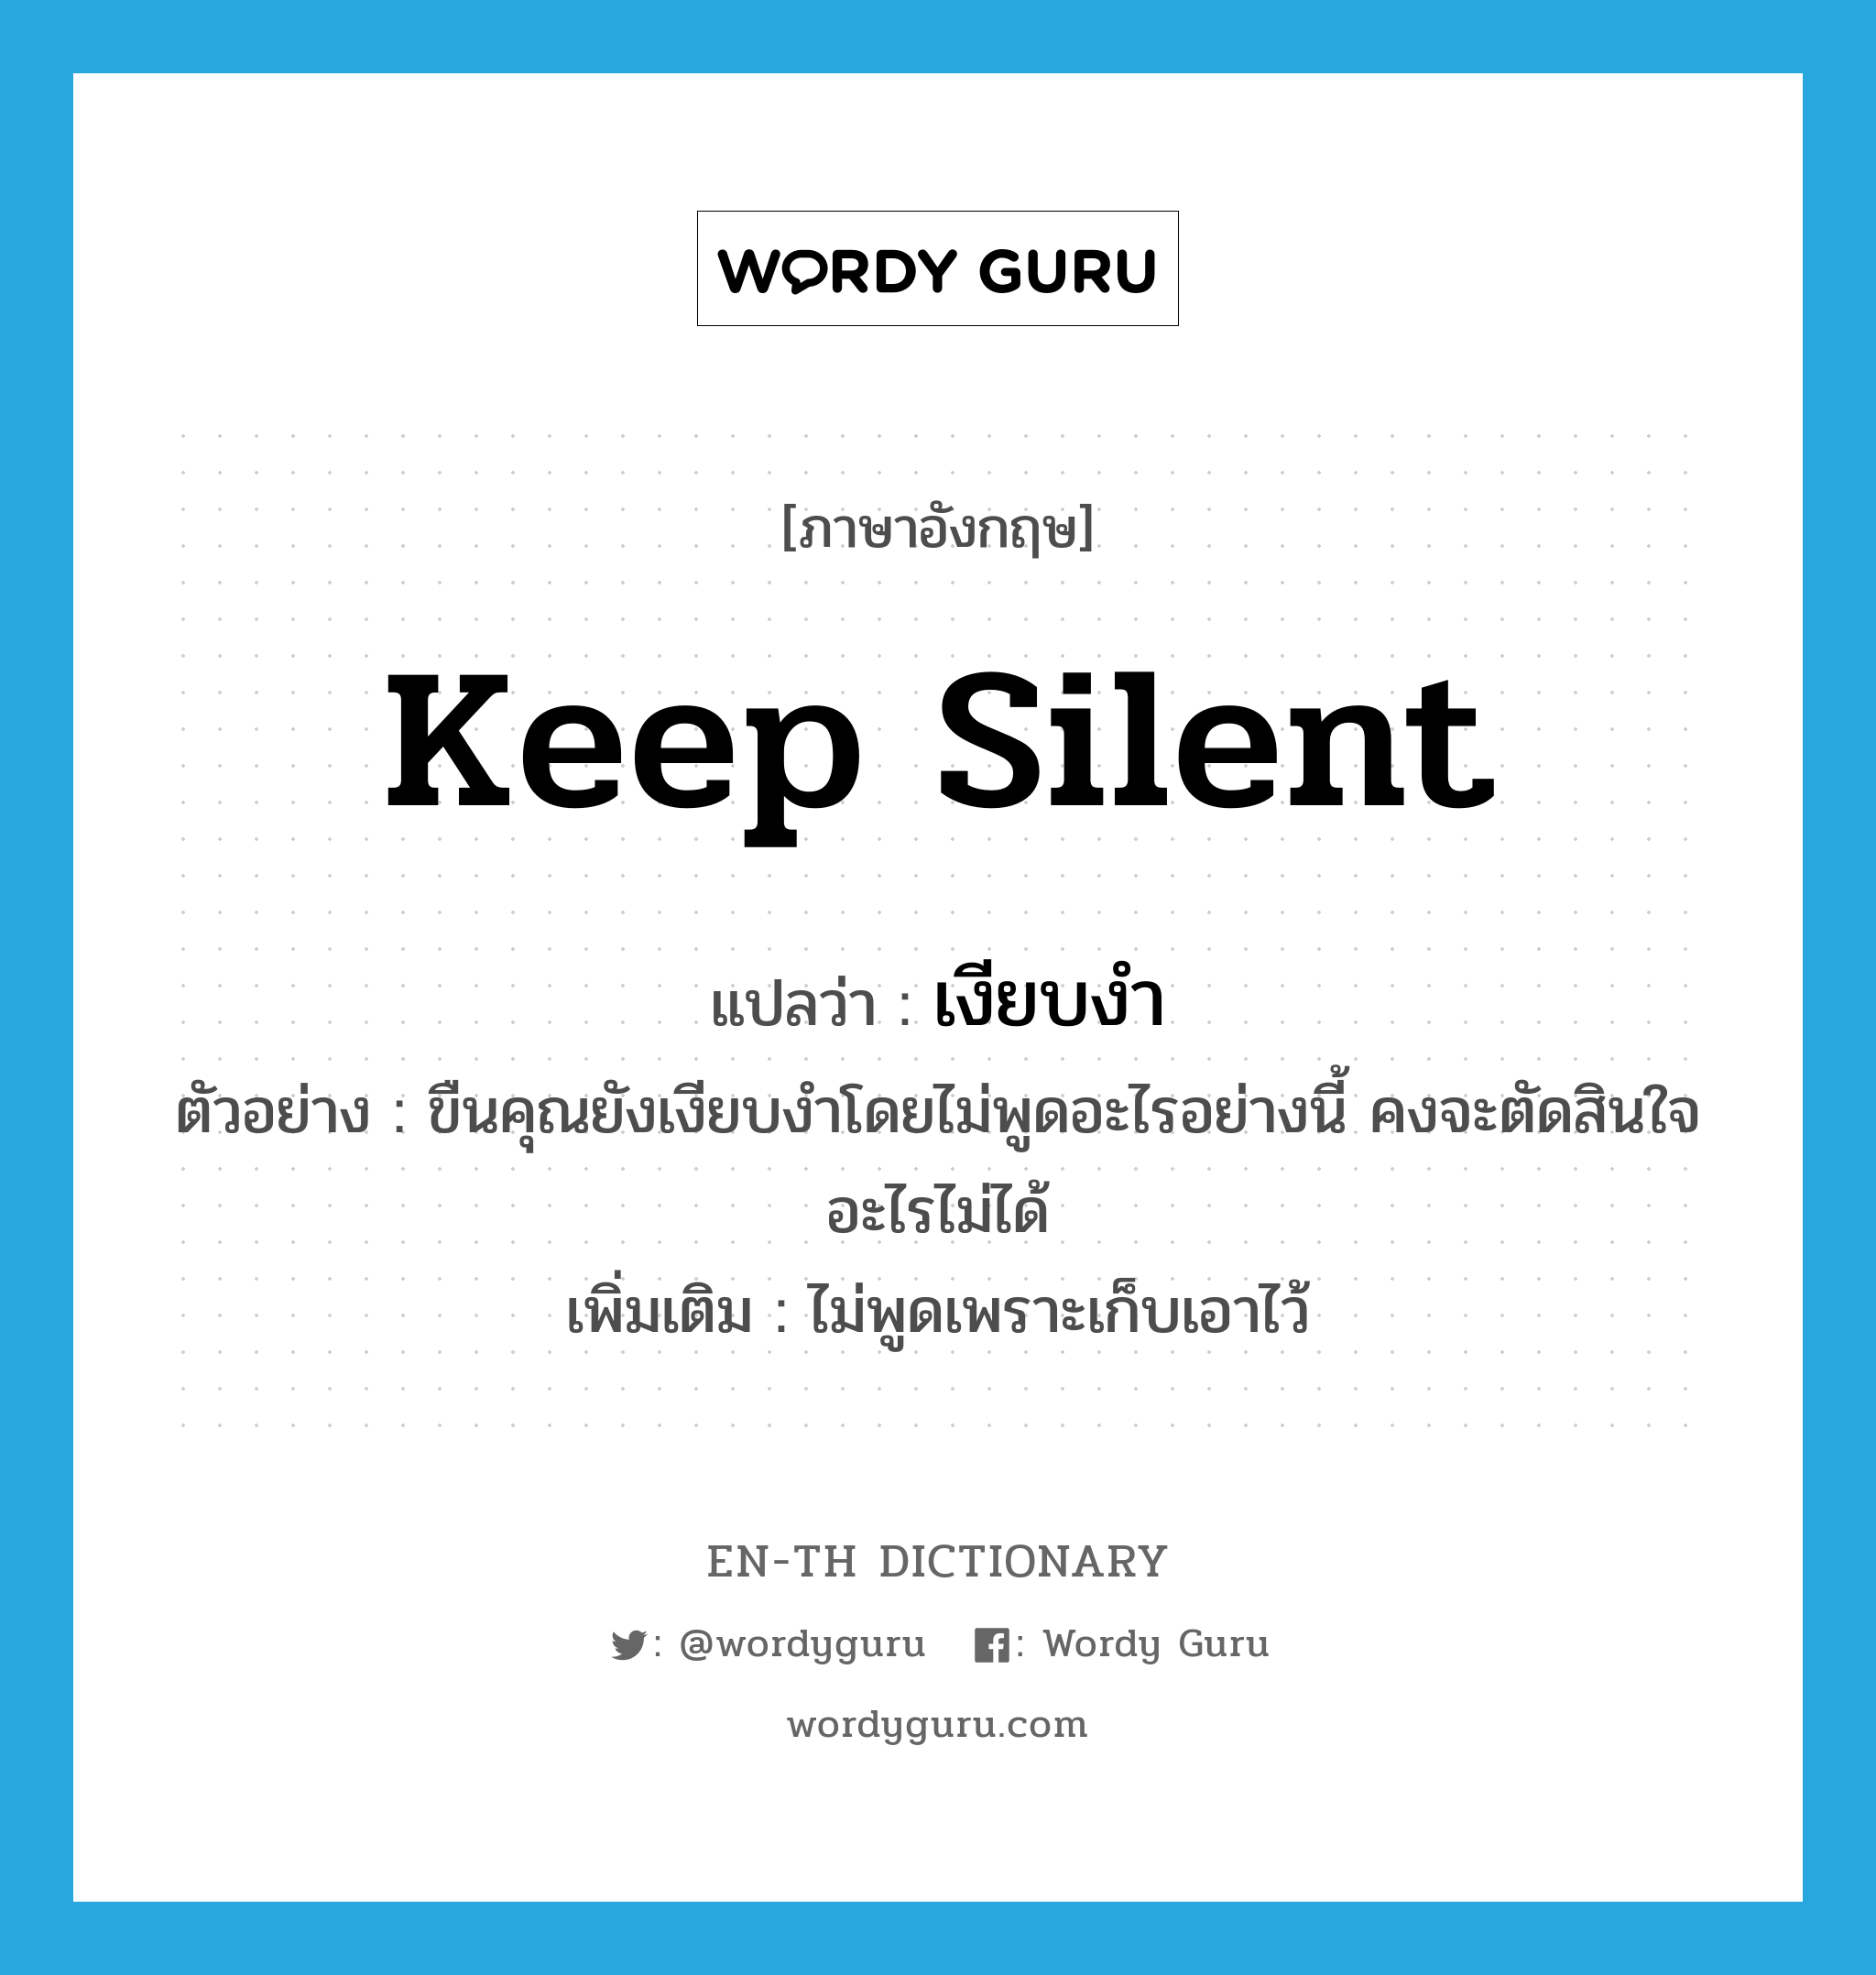 keep silent แปลว่า?, คำศัพท์ภาษาอังกฤษ keep silent แปลว่า เงียบงำ ประเภท V ตัวอย่าง ขืนคุณยังเงียบงำโดยไม่พูดอะไรอย่างนี้ คงจะตัดสินใจอะไรไม่ได้ เพิ่มเติม ไม่พูดเพราะเก็บเอาไว้ หมวด V